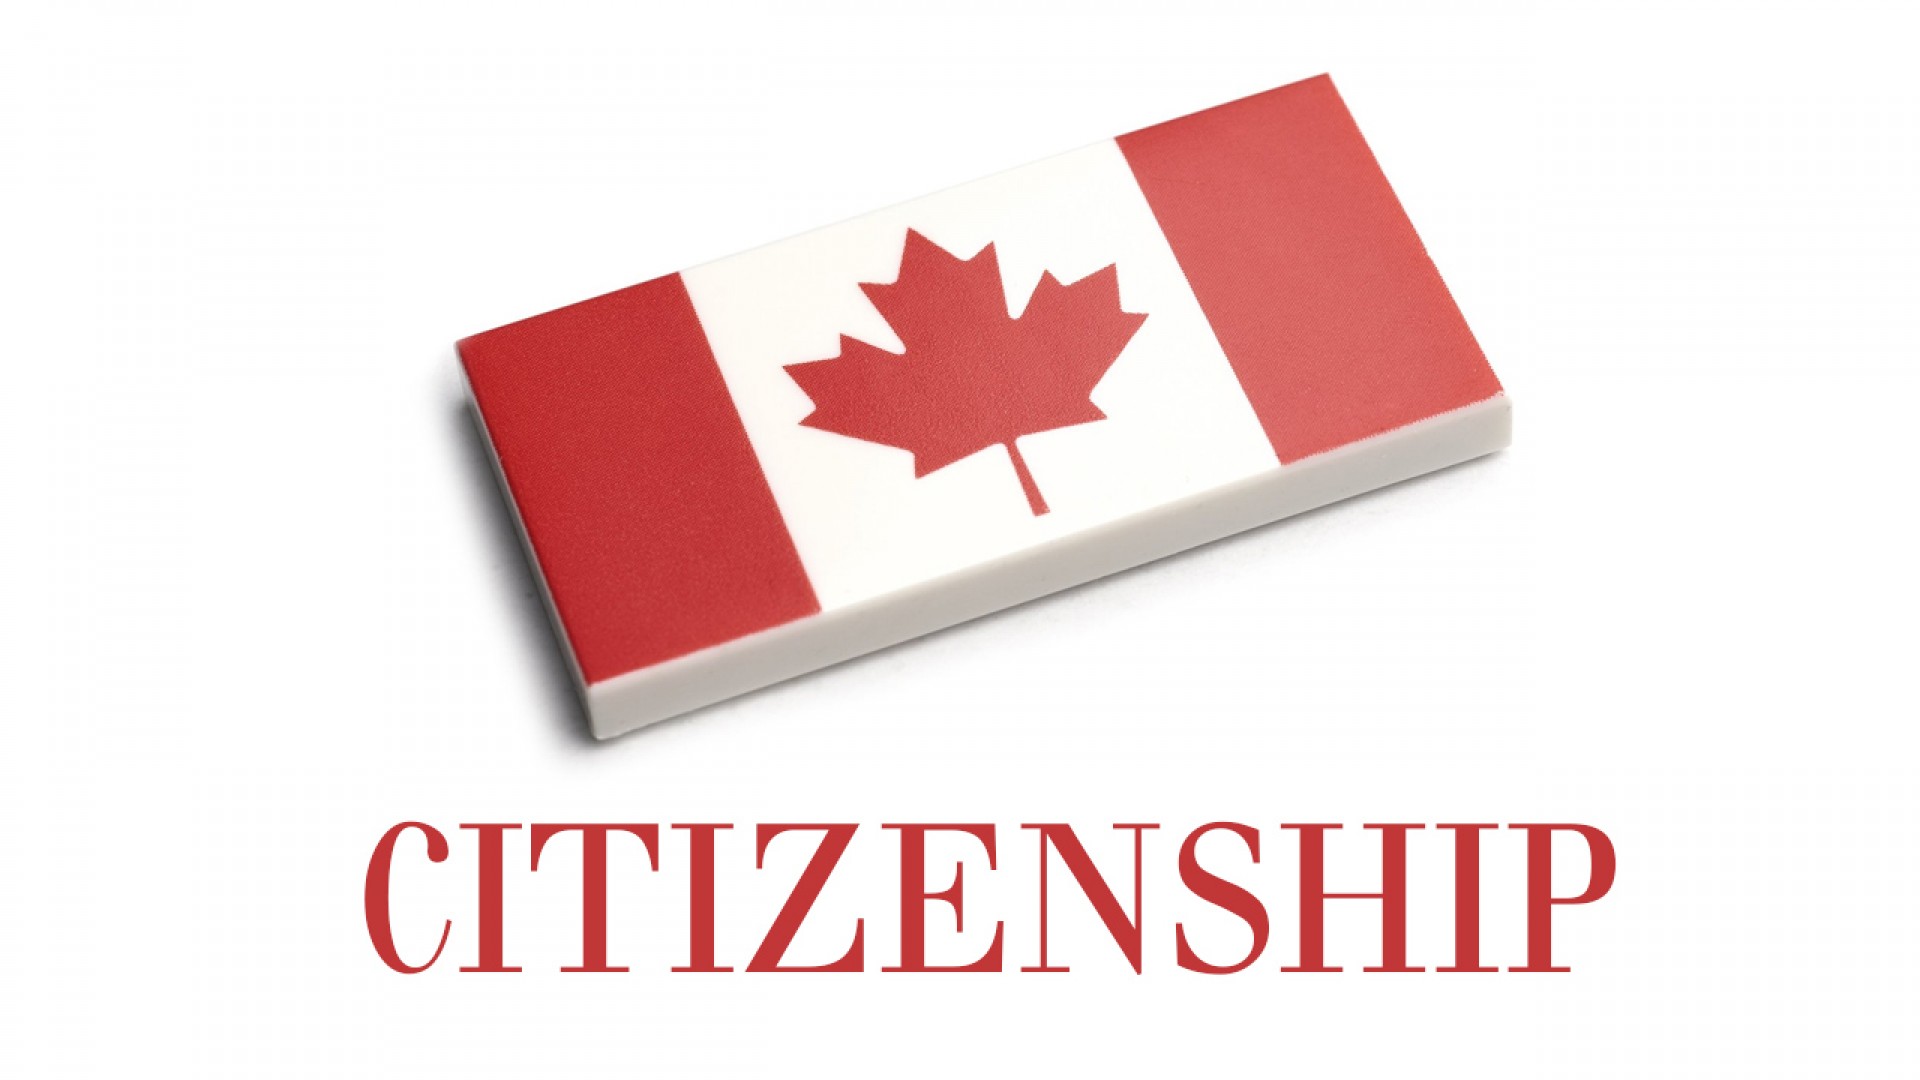 Định cư ở Canada: citizenship là gì và quy trình đăng ký như thế nào?